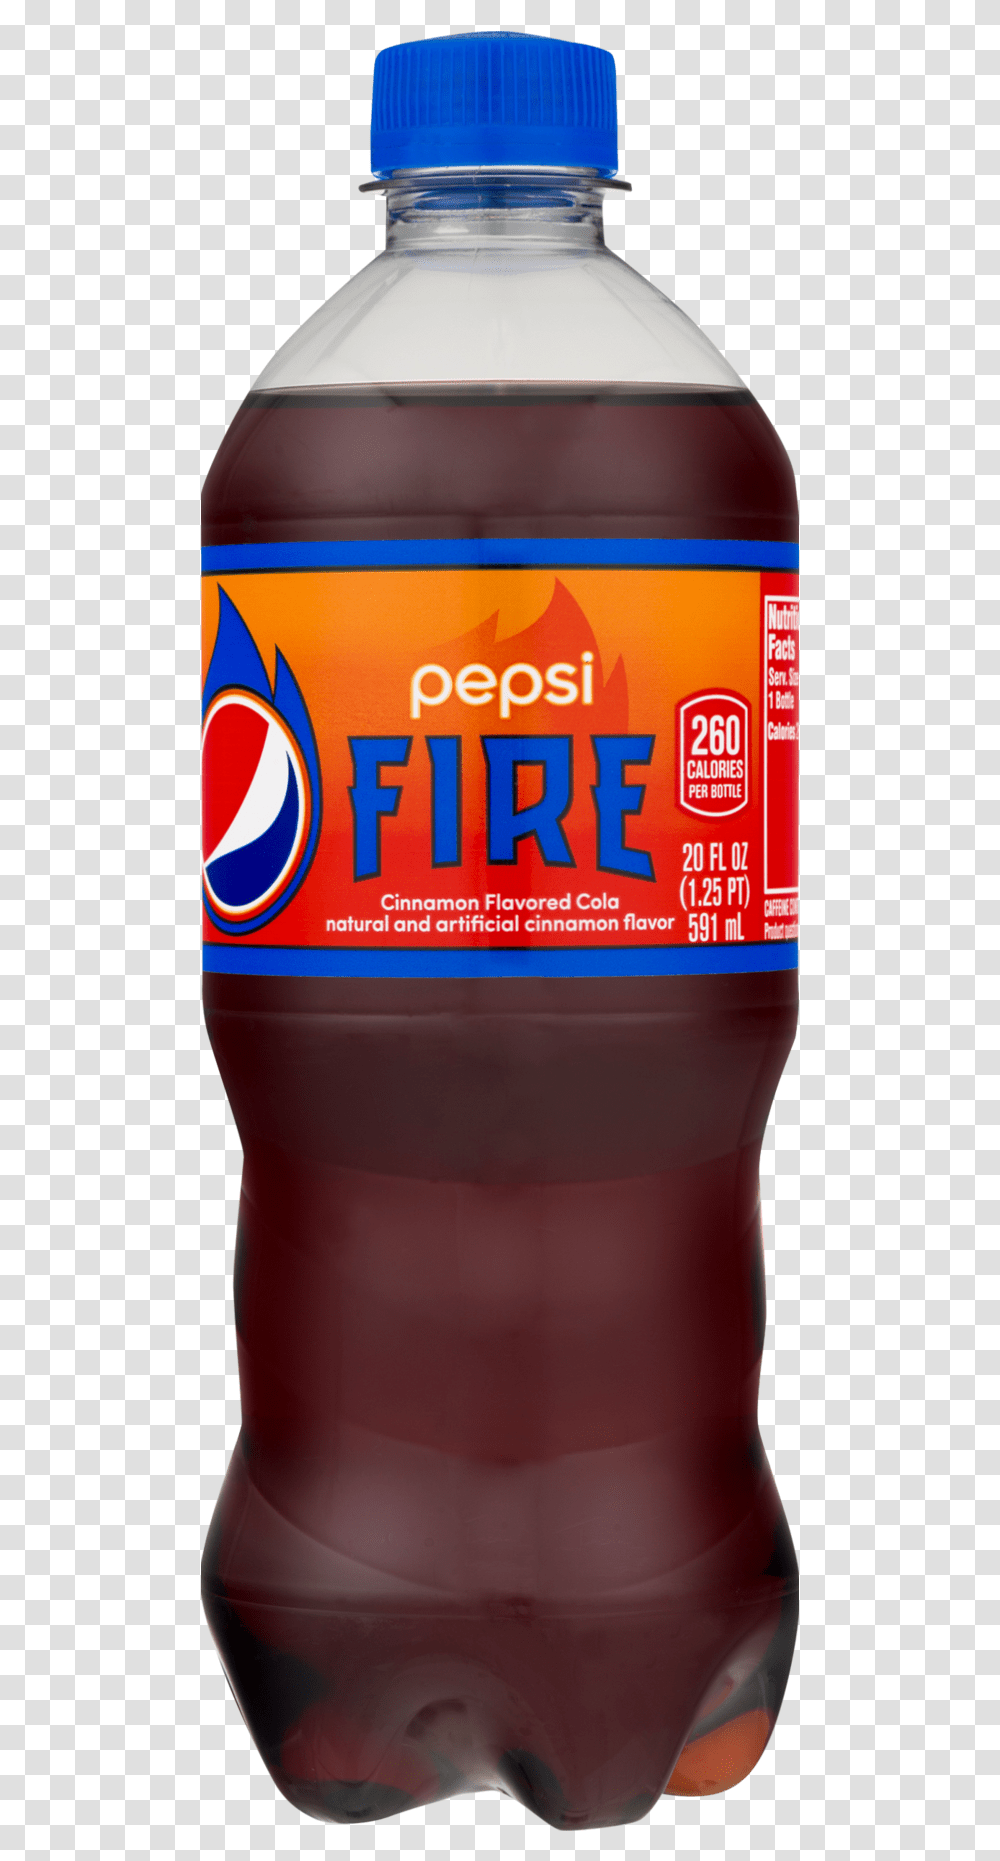 Pepsi Fire Plastic Bottle, Beer, Alcohol, Beverage, Drink Transparent Png